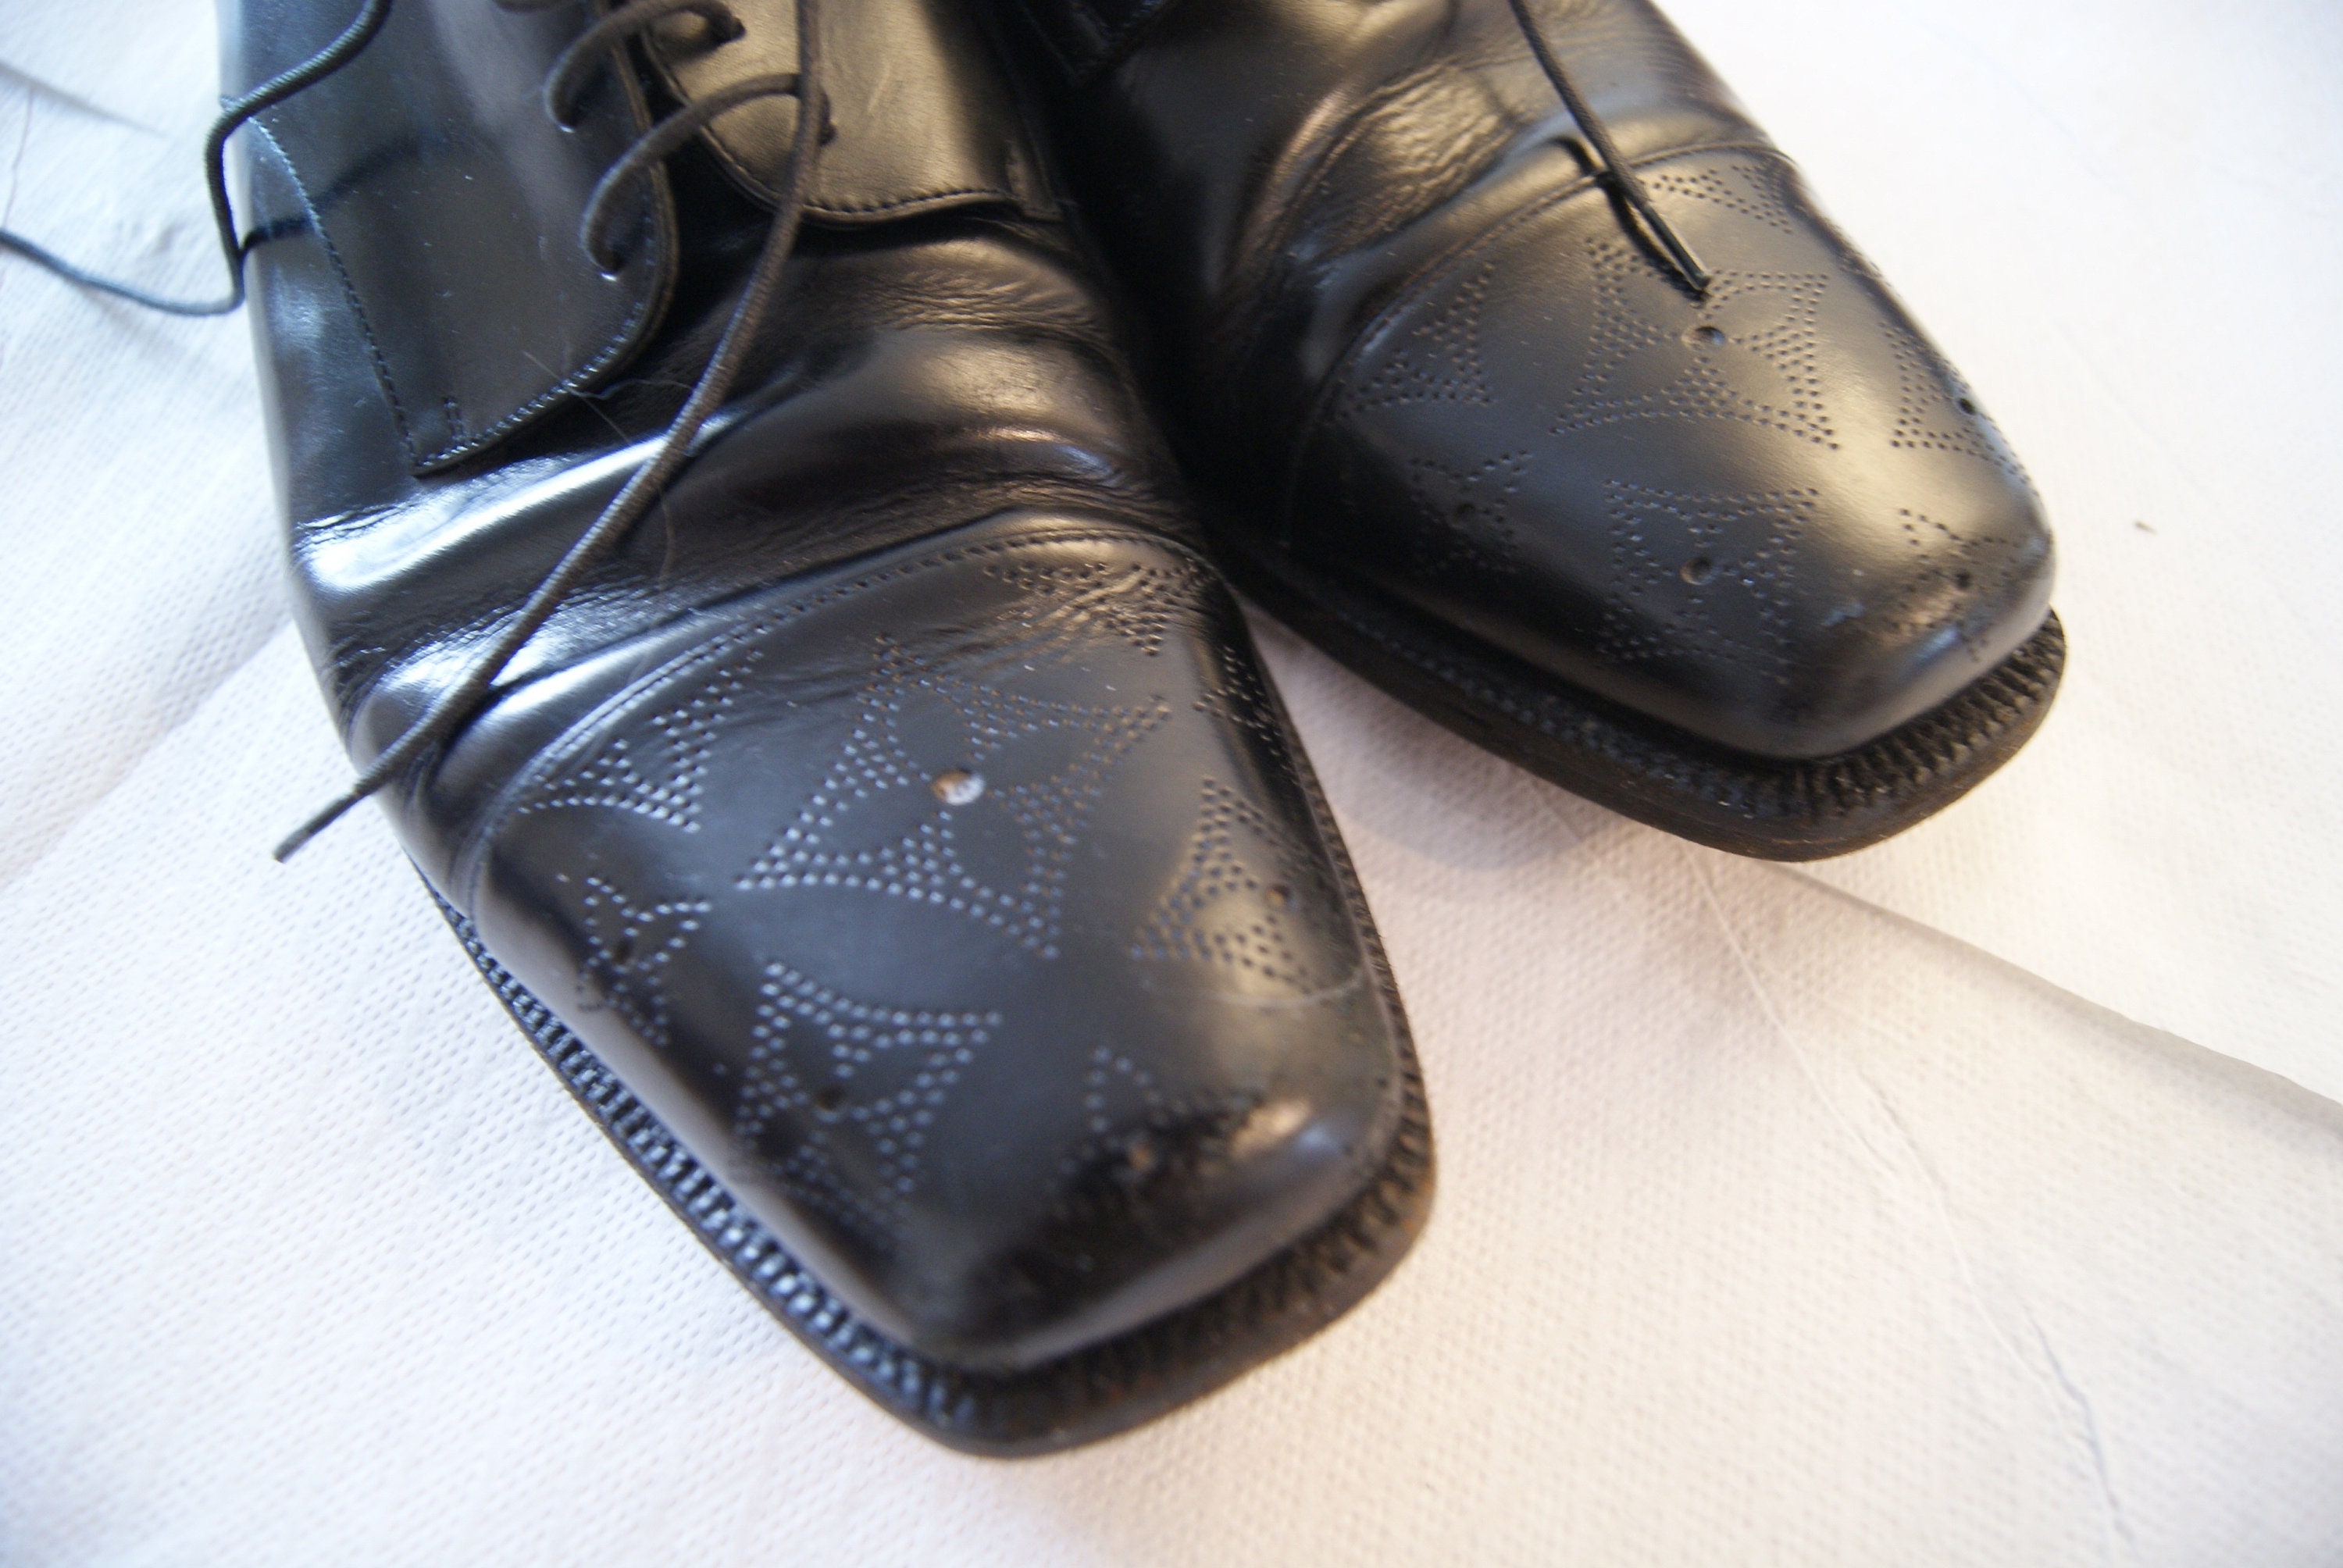 Vintage Mens LOUIS VUITTON Oxford shoes Leather black Size 11